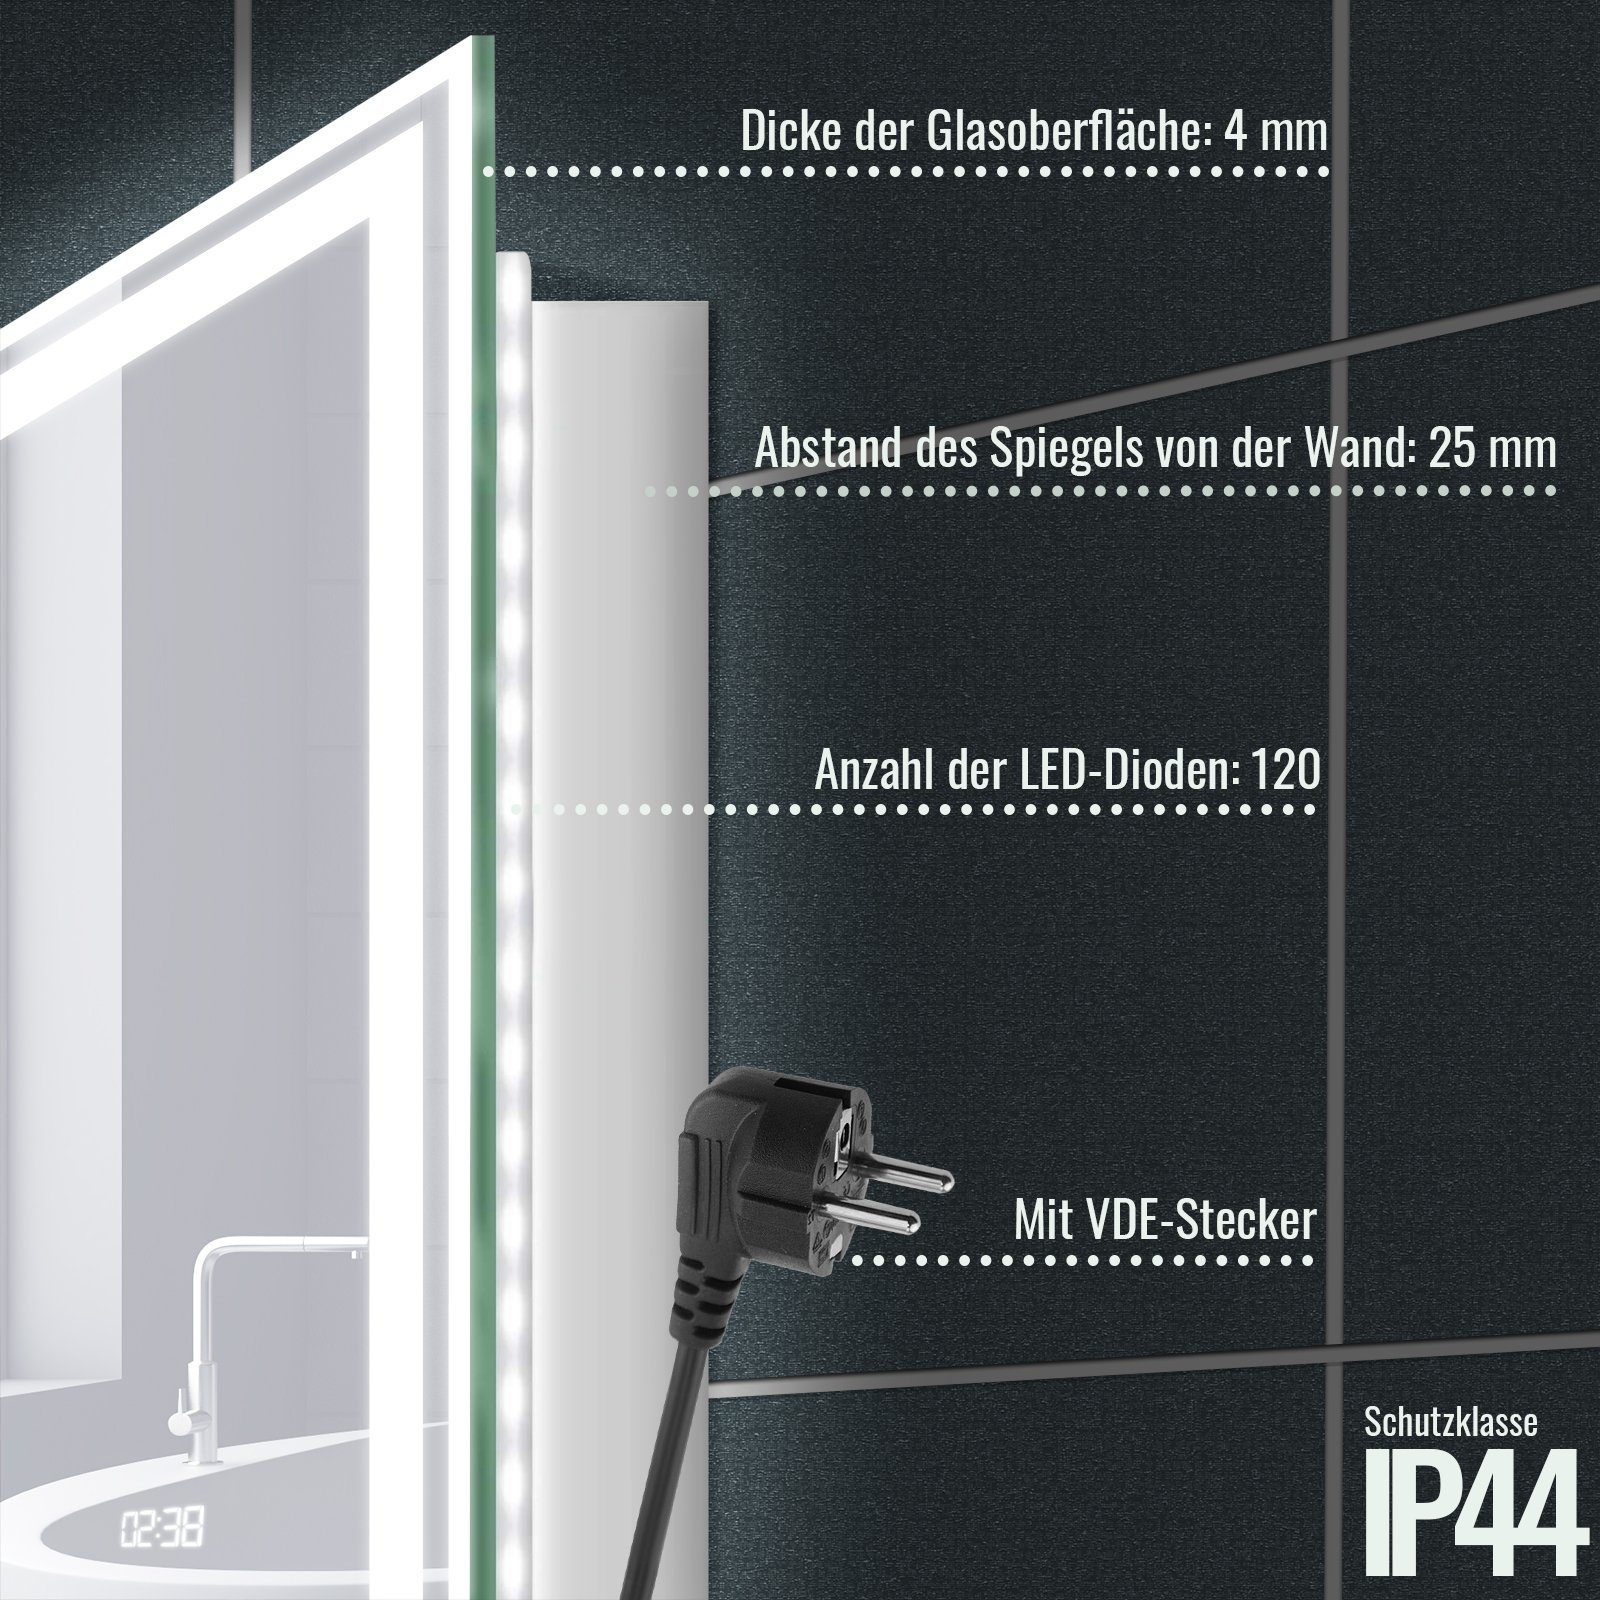 Aquamarin Badspiegel LED Badspiegel - cm 3000-7000K Dimmbar, Beschlagfrei, 60 100 x Energiesparend